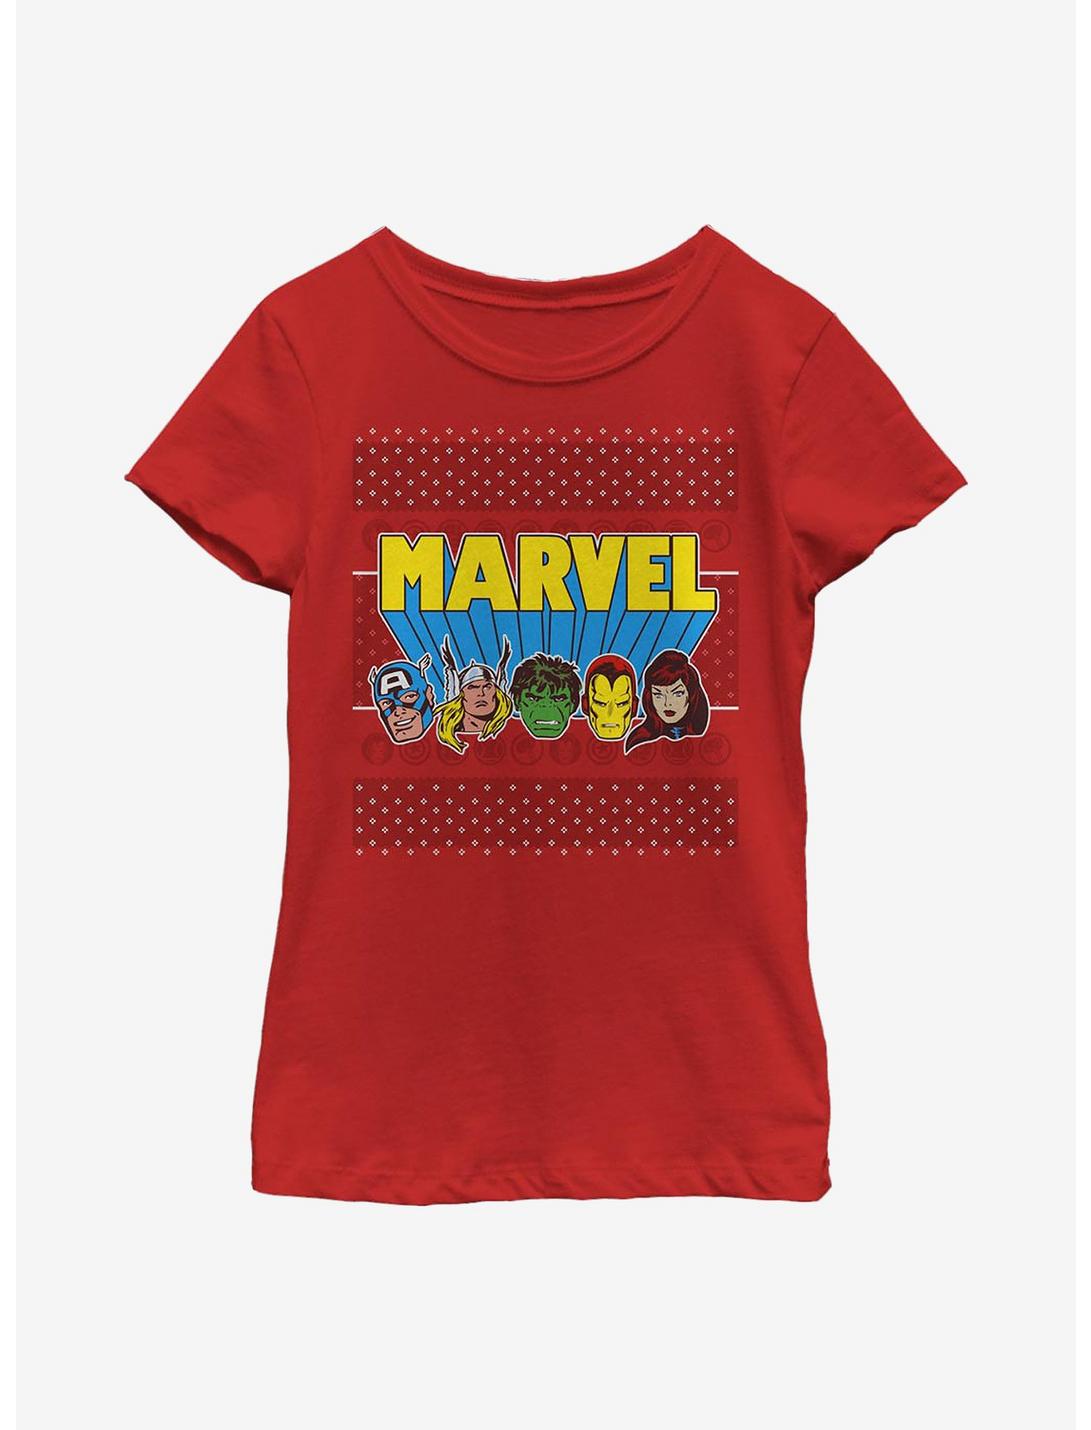 Marvel Avengers Jolly Avengers Youth Girls T-Shirt, RED, hi-res